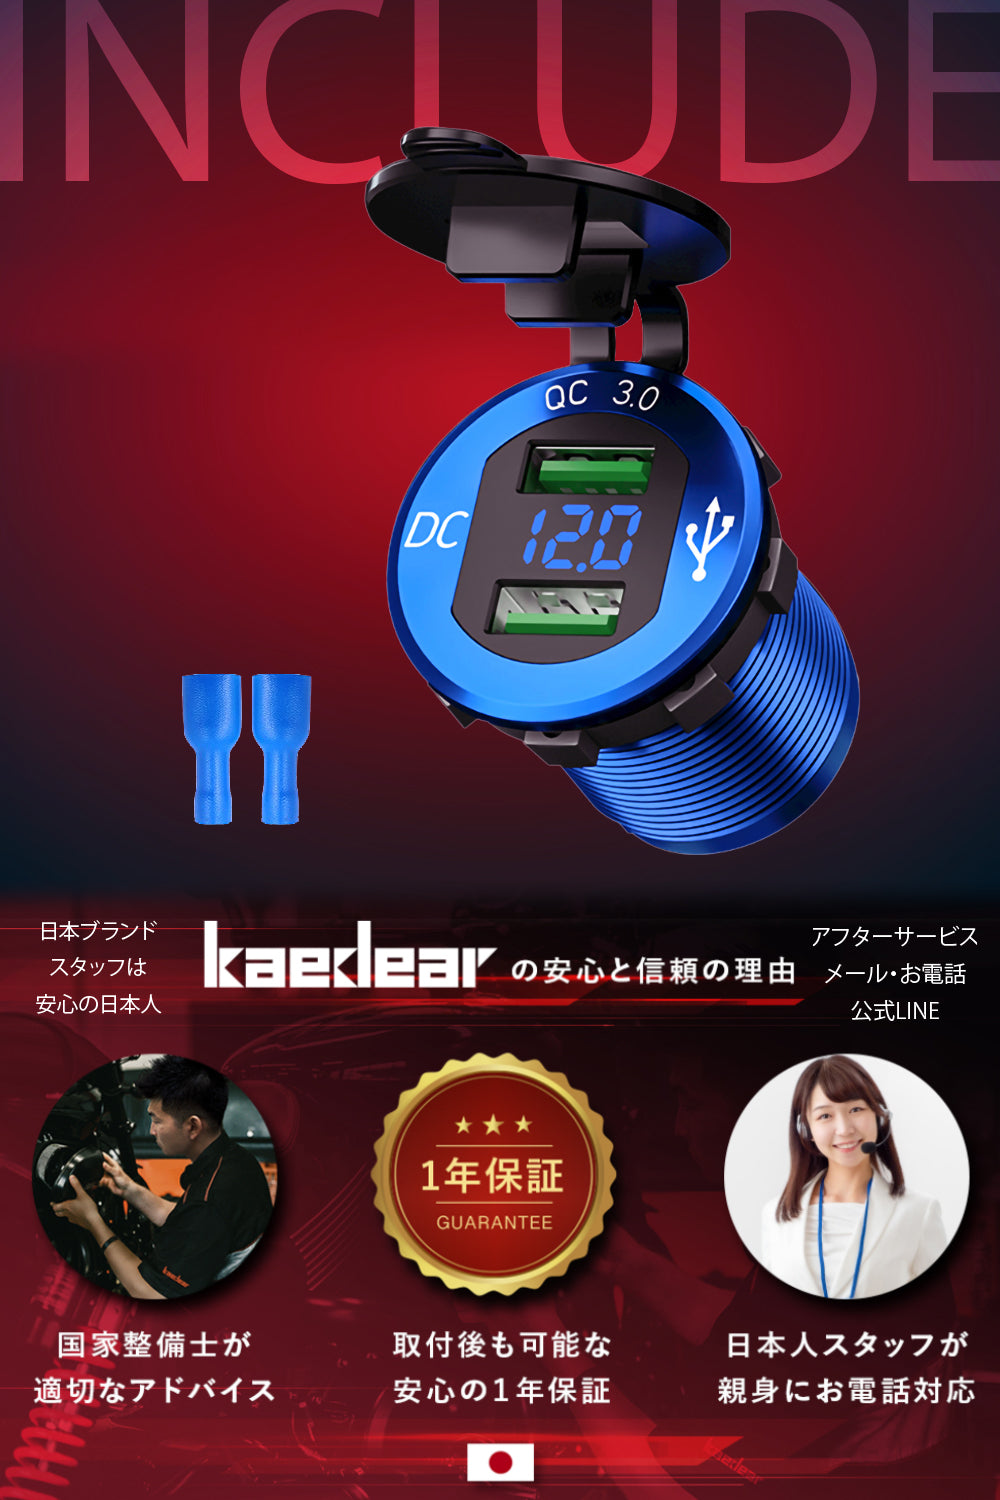 デジタル 電圧計 USB電源 - Kaedear(カエディア)